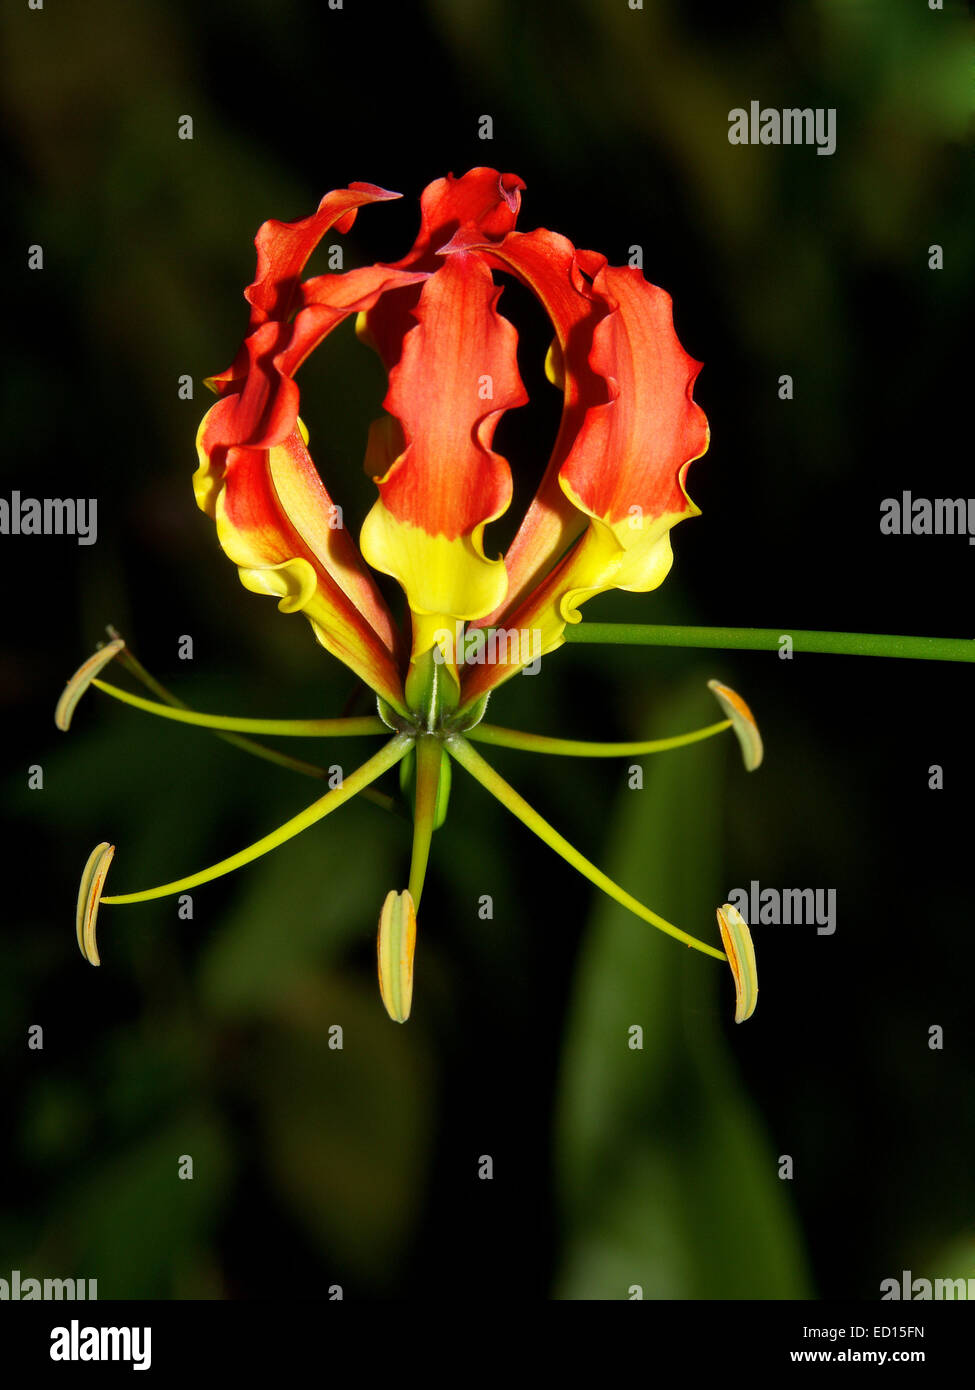 Spettacolare e insolito rosso e giallo fiore di gloriosa superba / Gloriosa lily, una pianta rampicante, contro uno sfondo scuro Foto Stock